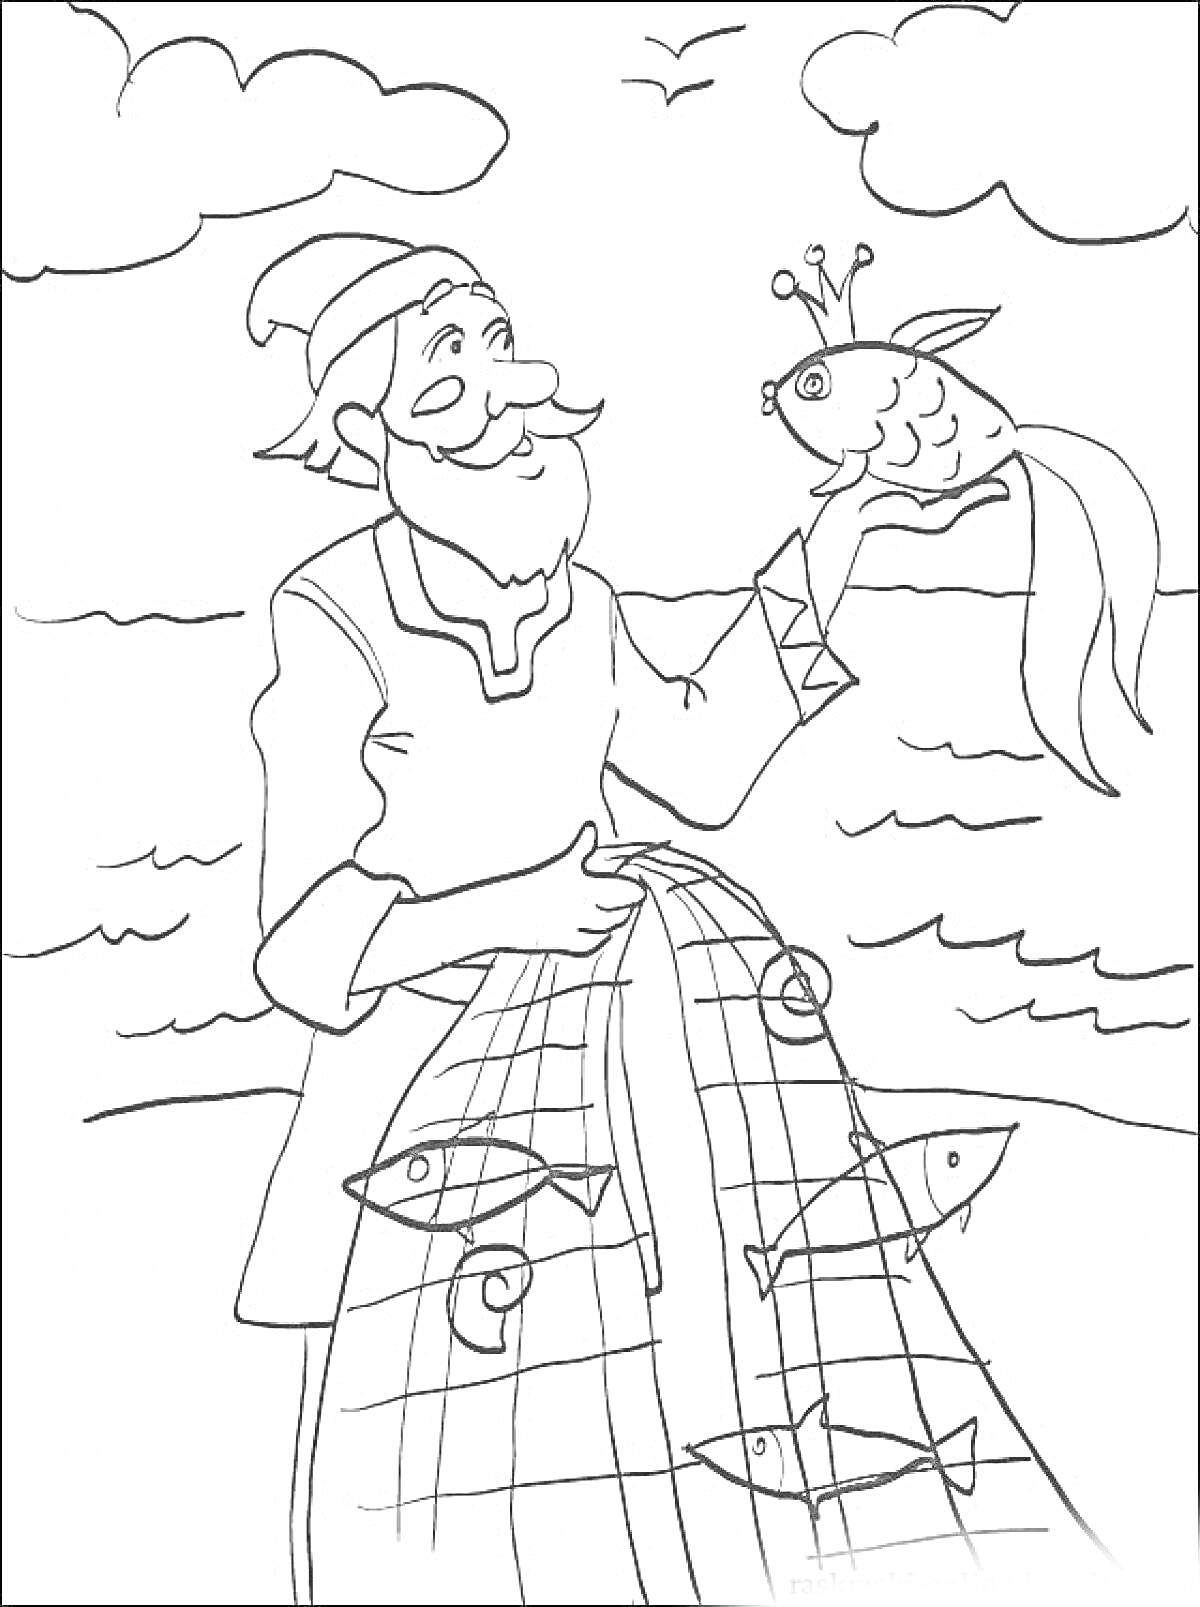 Старик с рыбкой в руках, рыбацкая сеть в море и рыбы, облака и птица